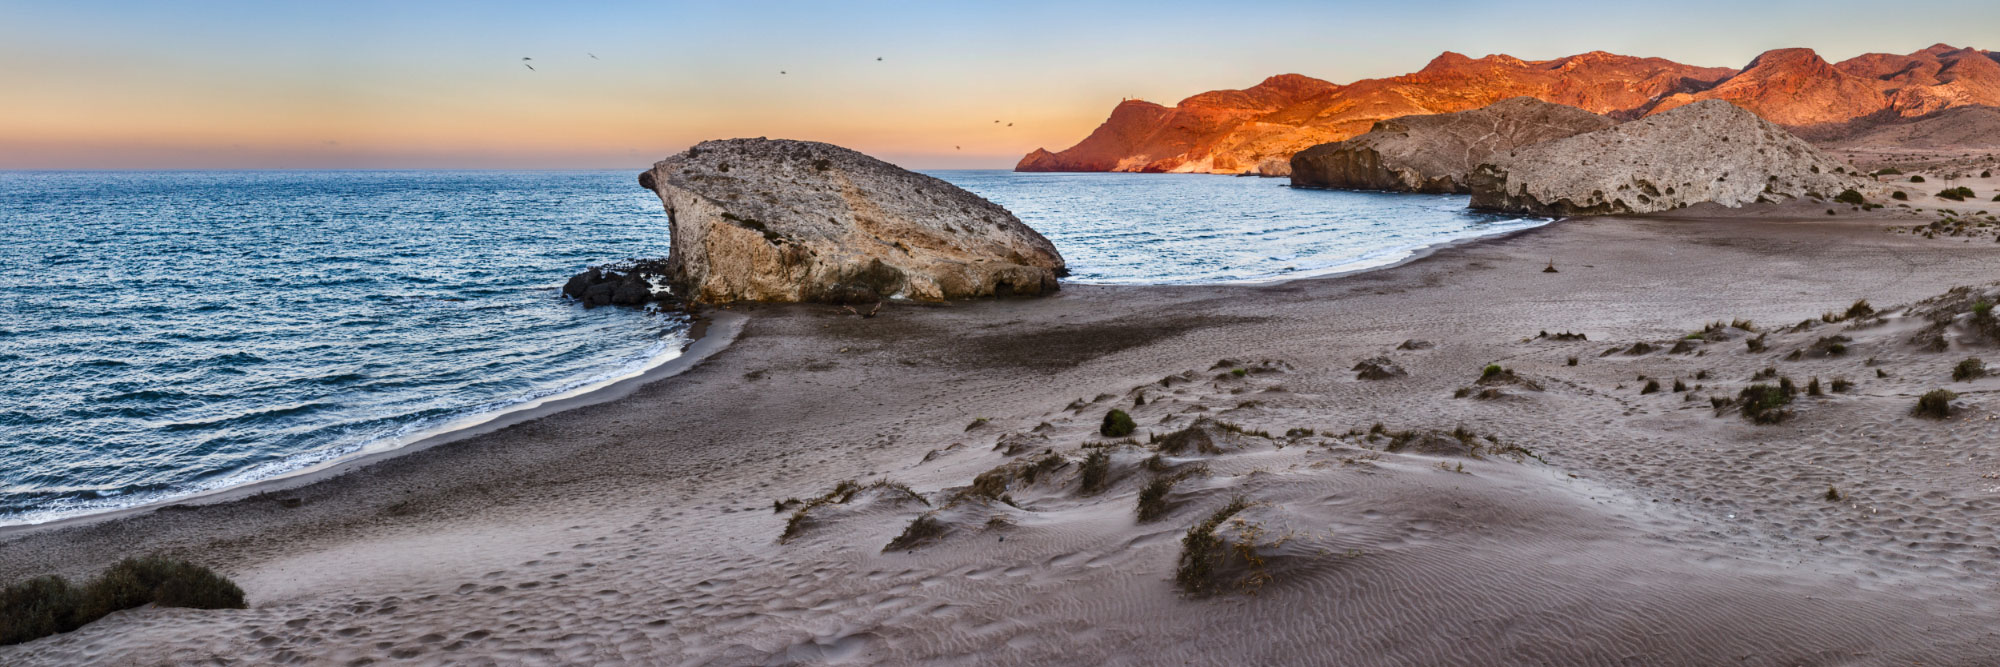 Playa Monsul, côte de Cabo de Gata